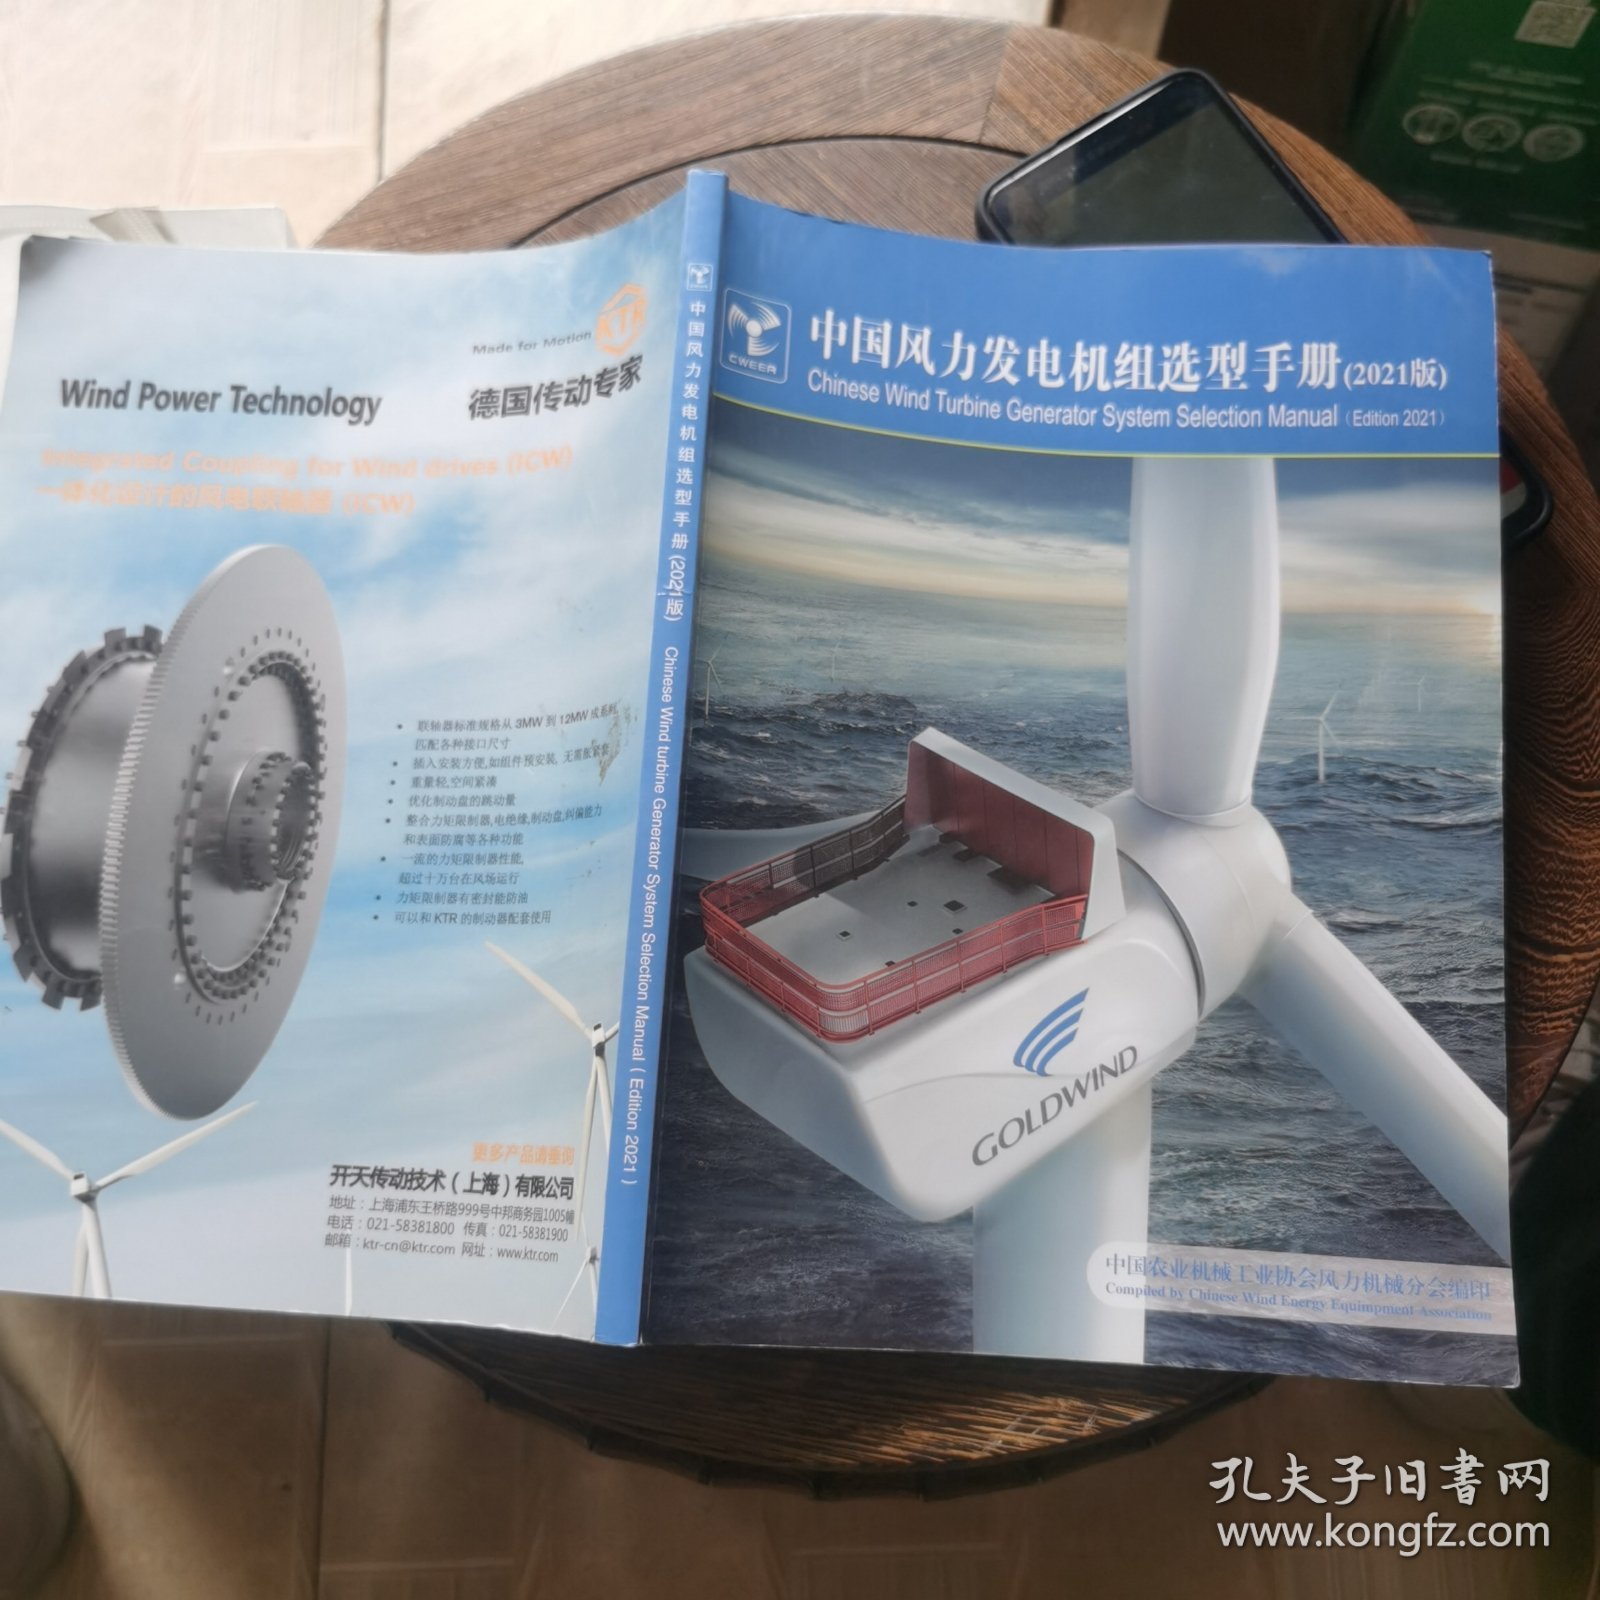 中国风力发电机组选型手册2021